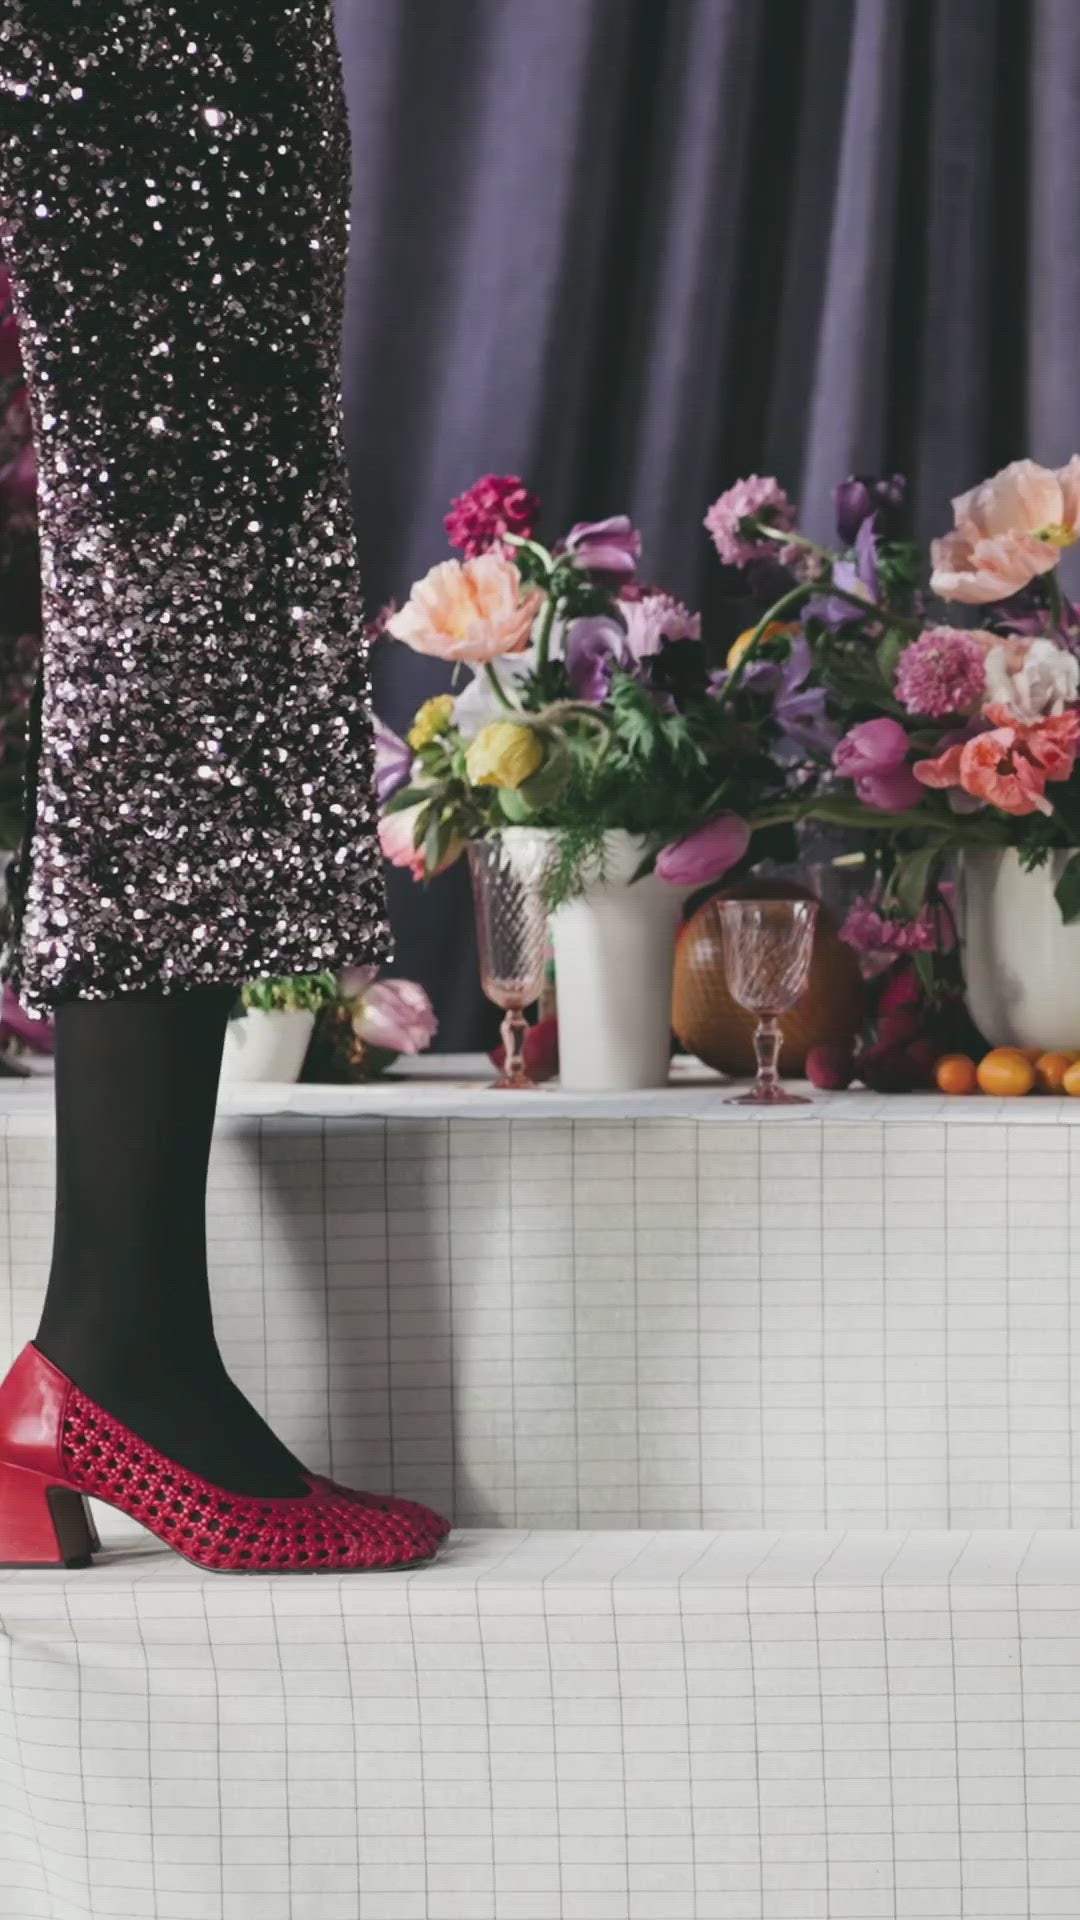 L'Instant Mode : Louis Vuitton dévoile les parfaites bottines pour  affronter la pluie - Elle